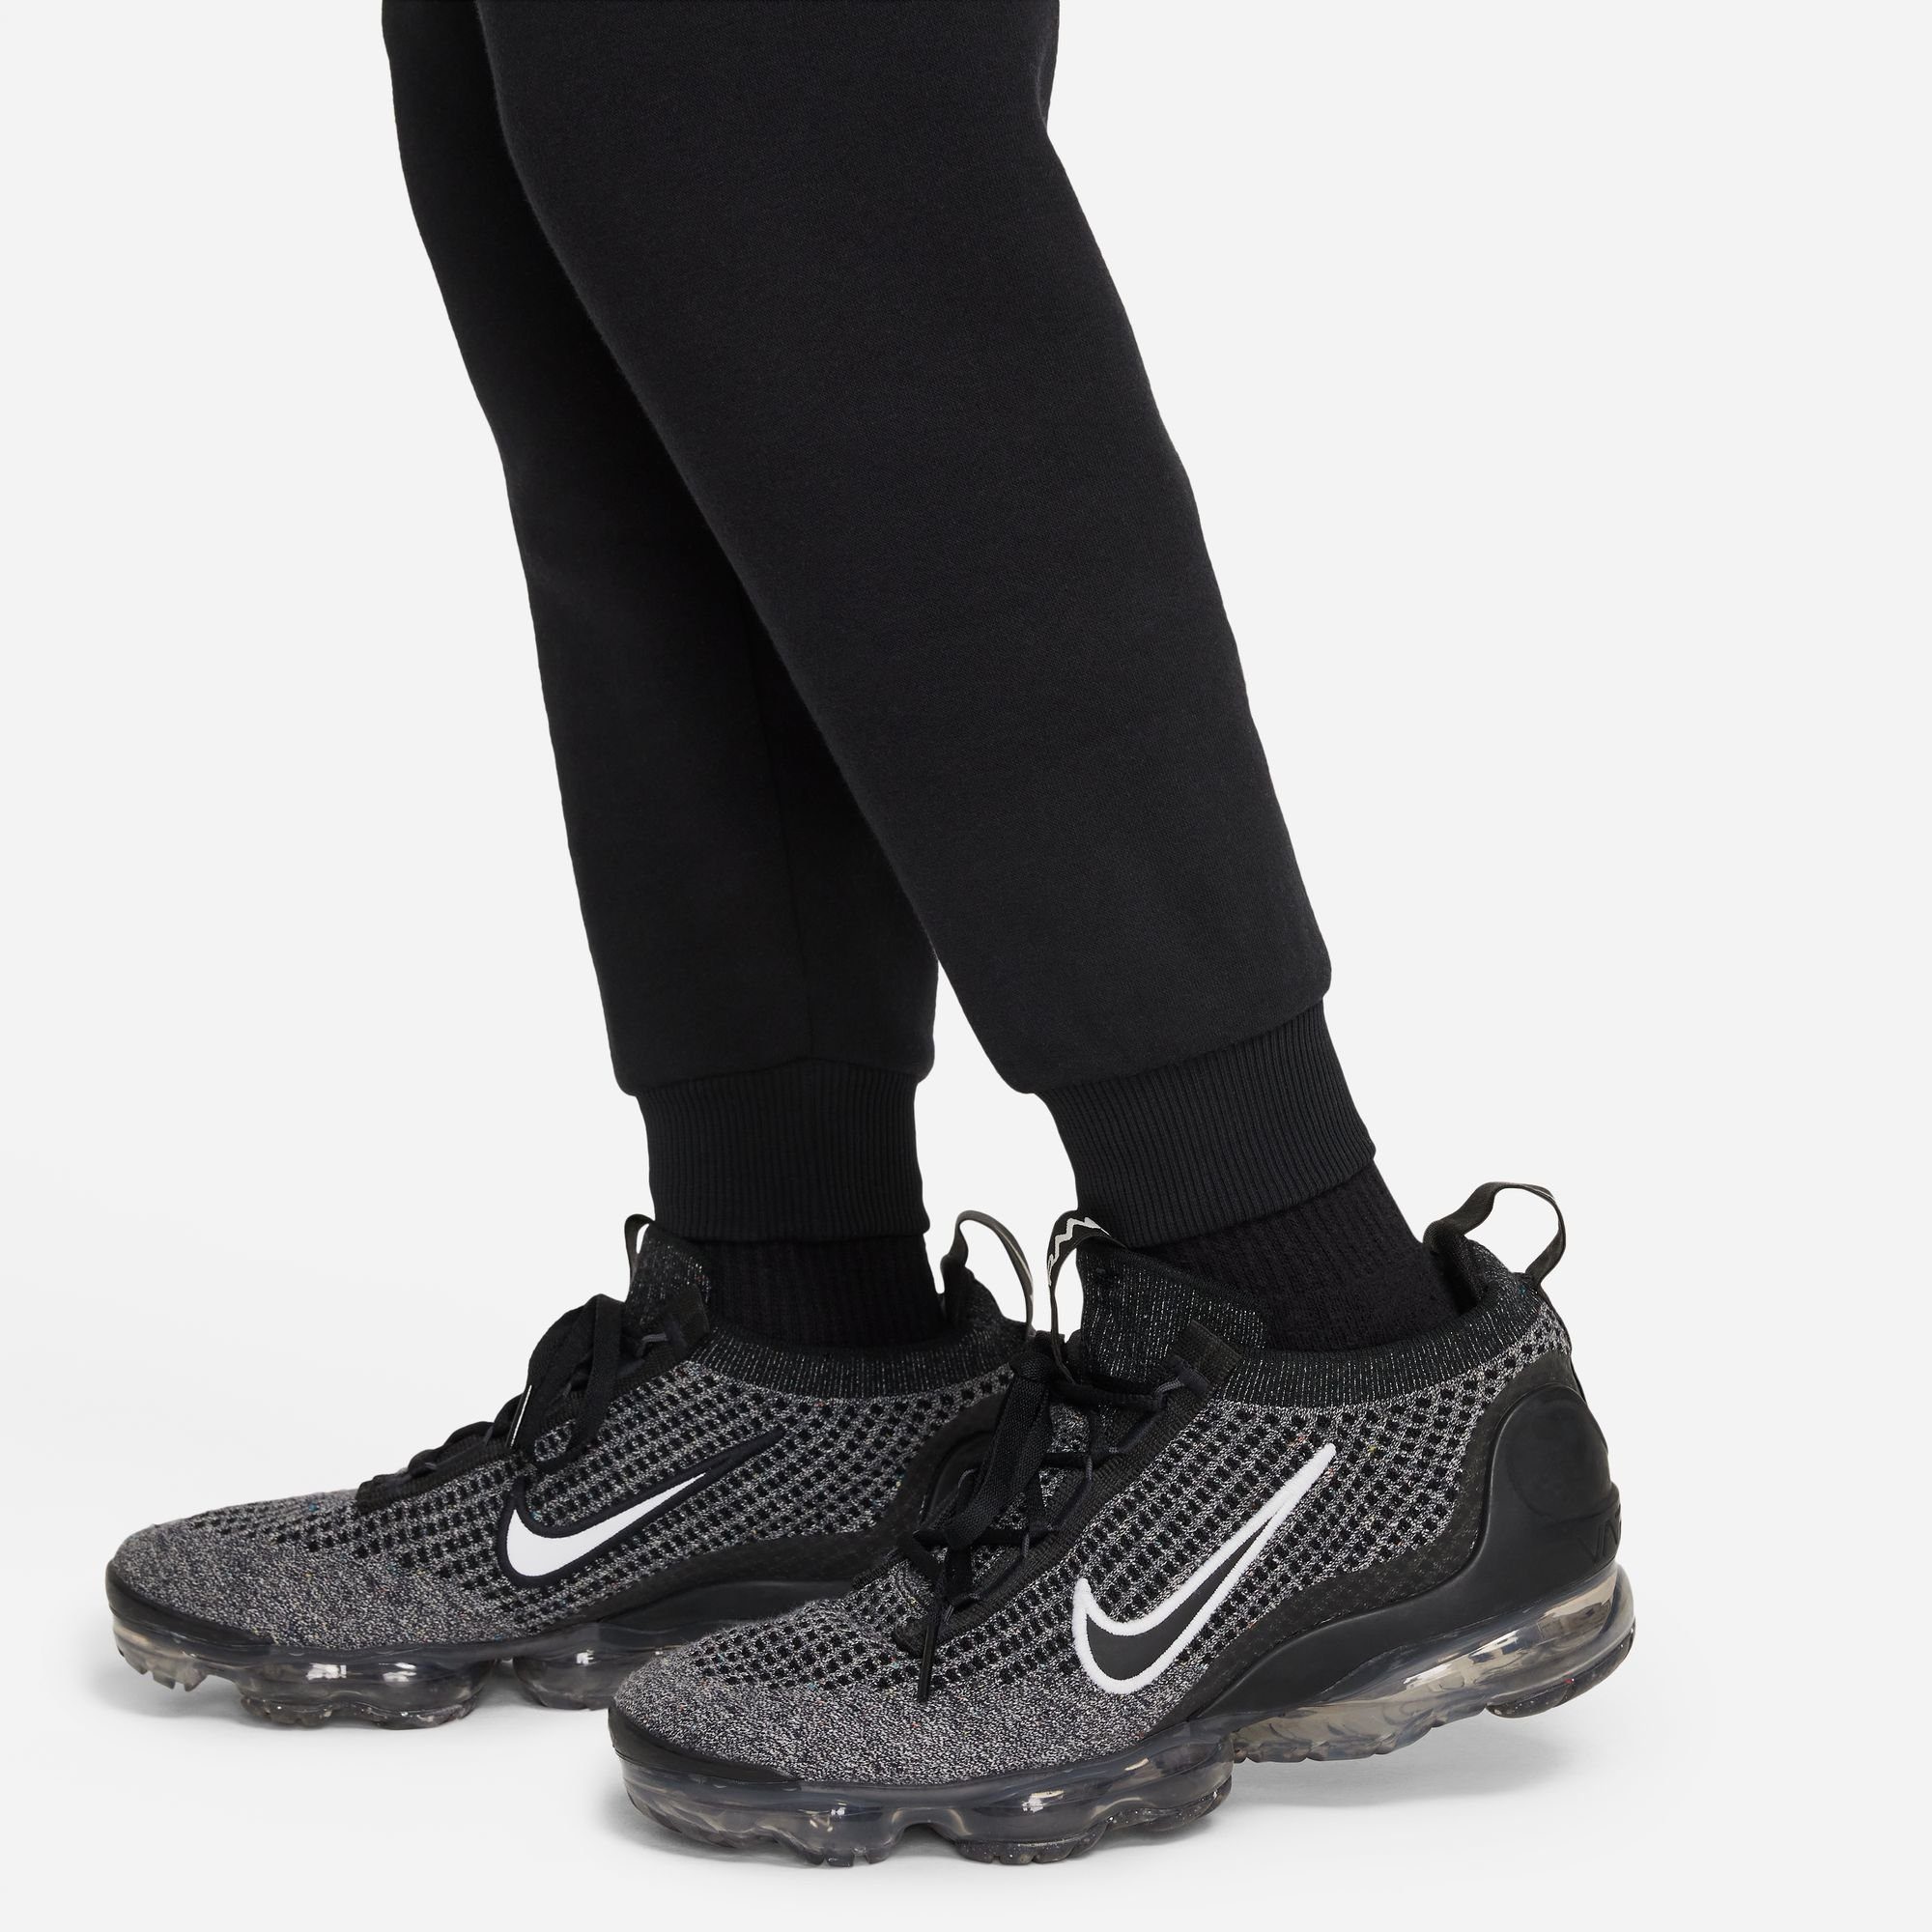 BIG BLACK/WHITE FLEECE Nike KIDS' CLUB Jogginghose Sportswear PANTS JOGGER